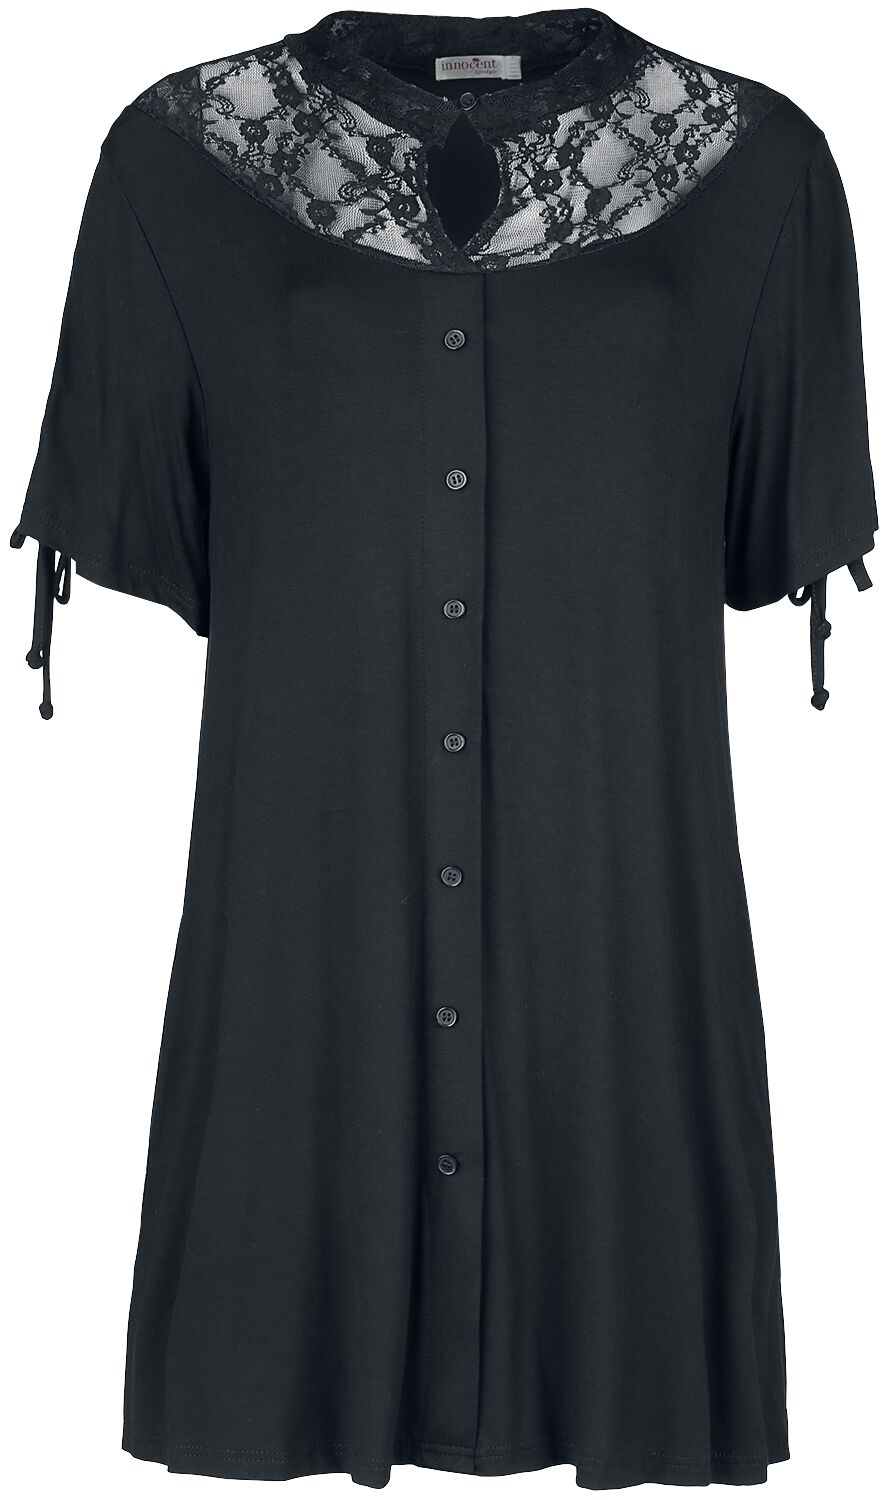 Robe courte Gothic de Innocent - Robe Joni - M - pour Femme - noir